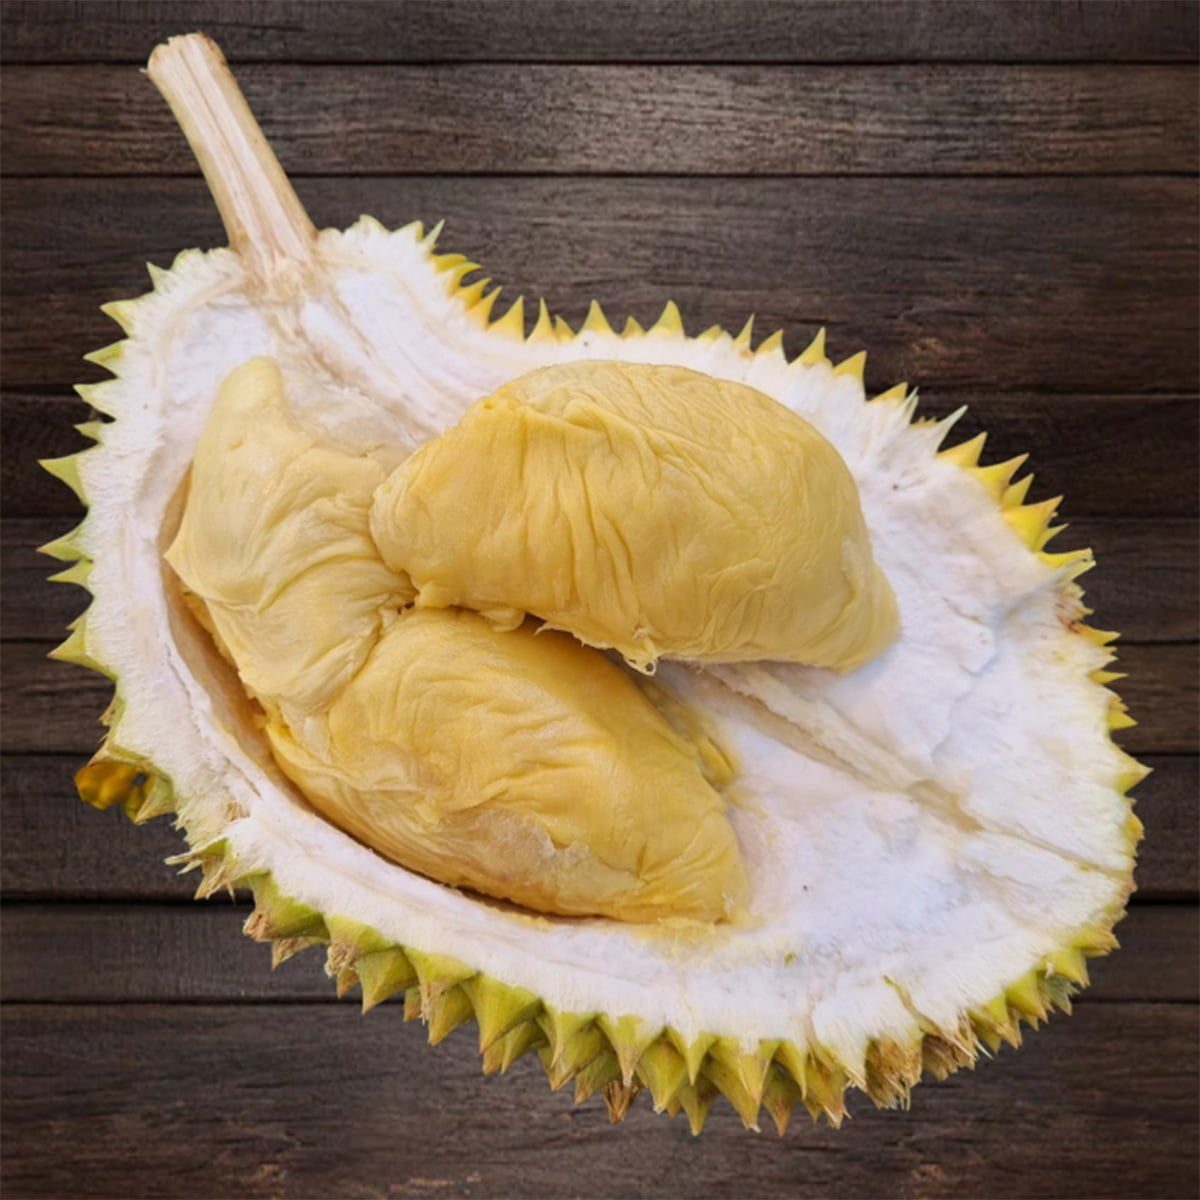 D88 durian